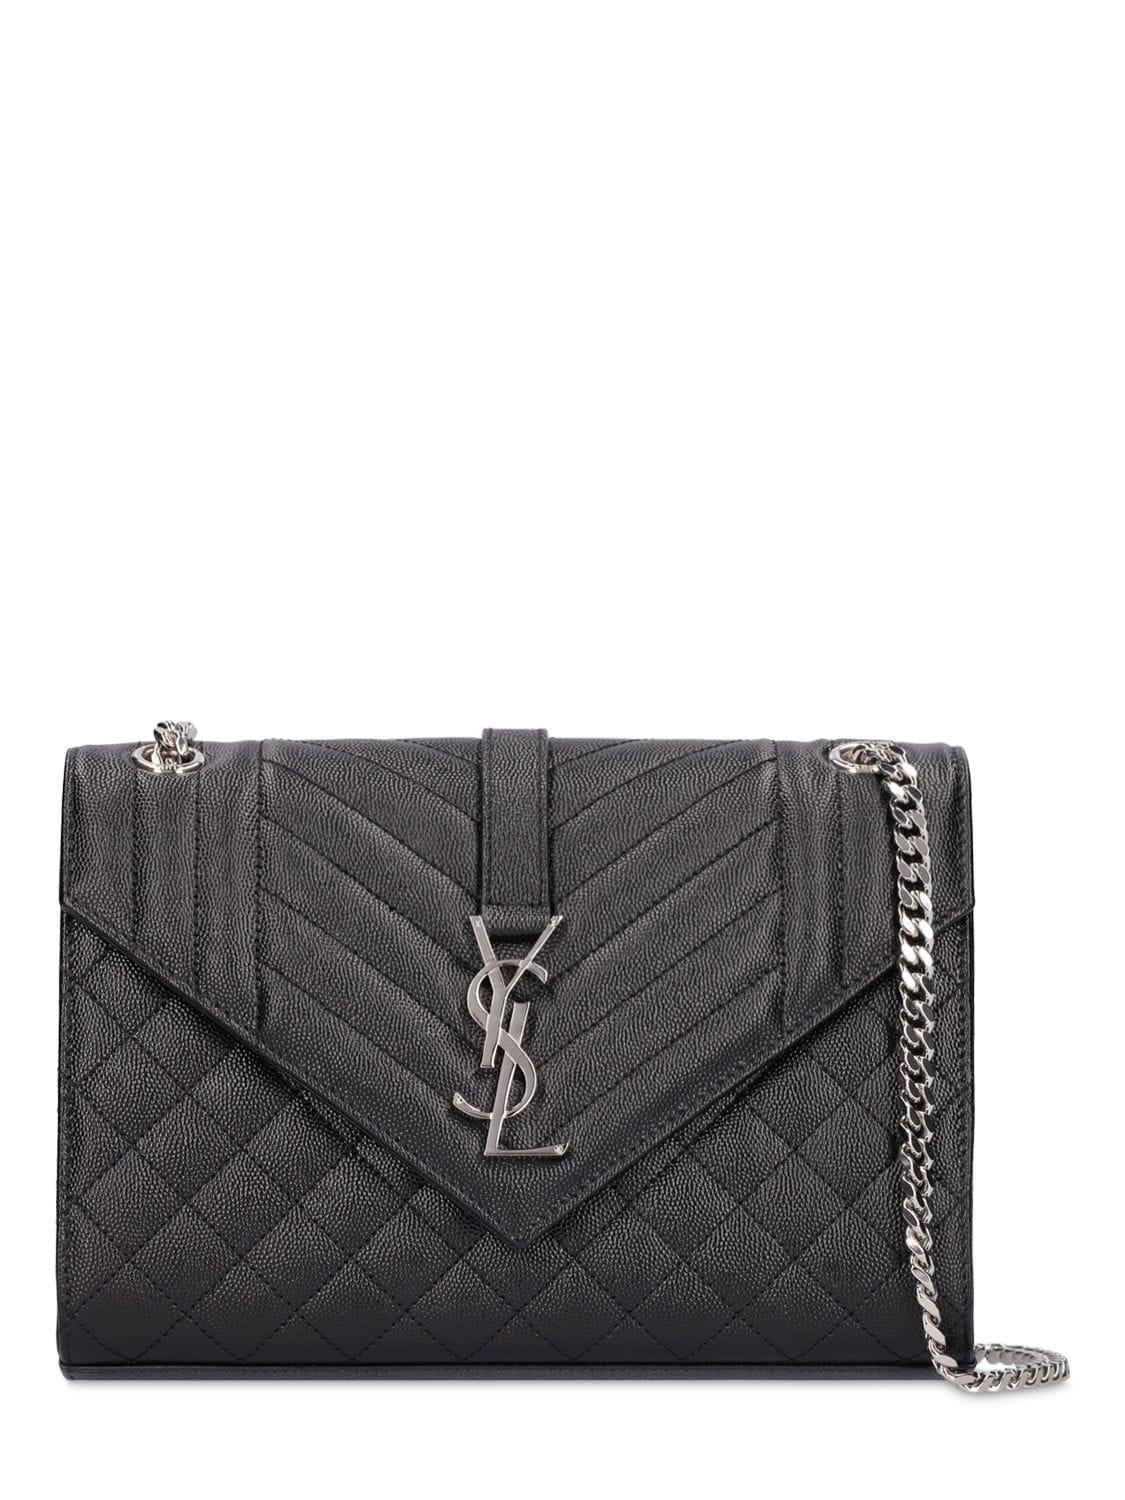 Saint Laurent Kate Tassel Calfskin Leather Shoulder Bag | Nordstrom |  Shoulder bag, Bags, Women's crossbody purse